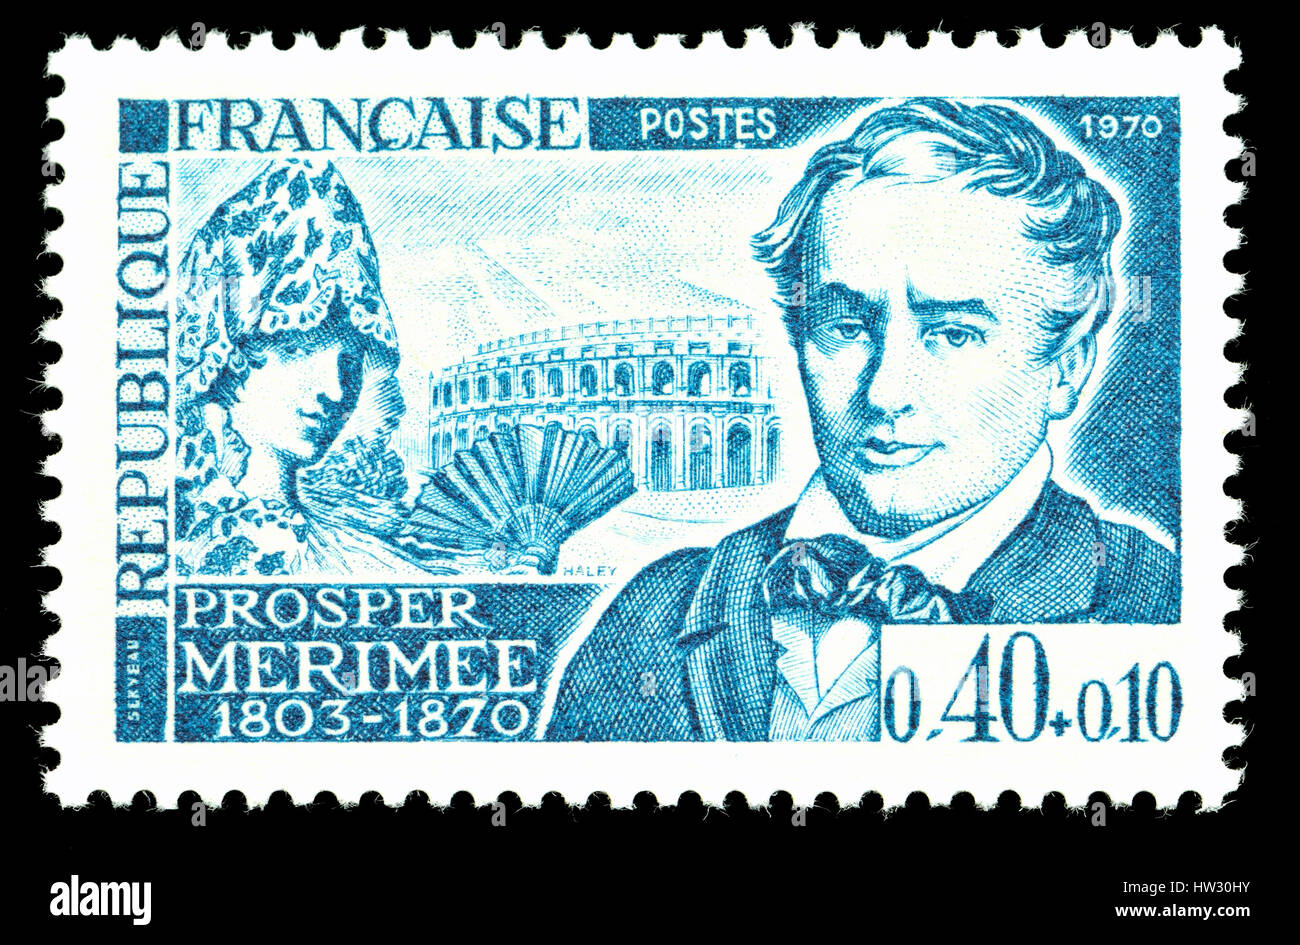 Il francese francobollo (1970) : Prosper Mérimée (1803 - 1870), drammaturgo francese, storico, archeologo e breve storia scrittore. Autore di Carmen, il Foto Stock